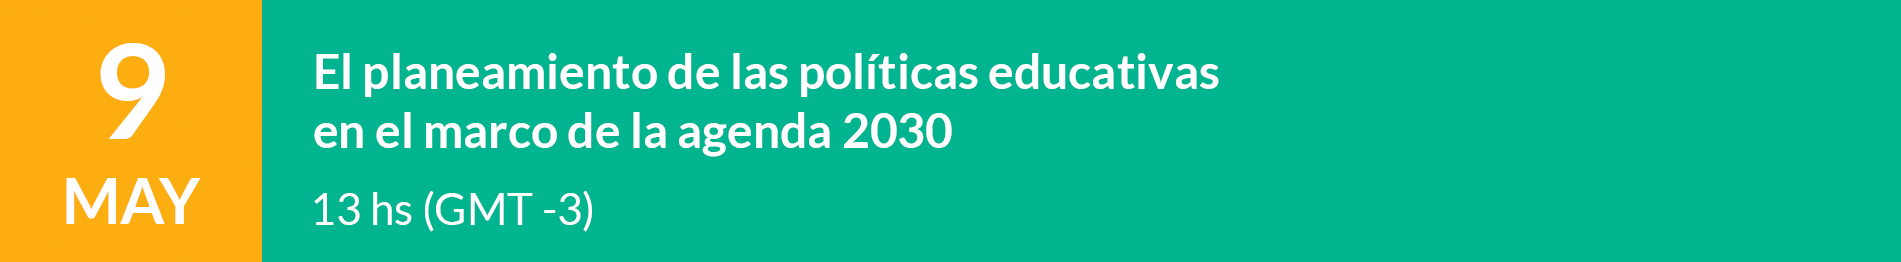 El planeamiento de las políticas educativas en el marco de la agenda 2030